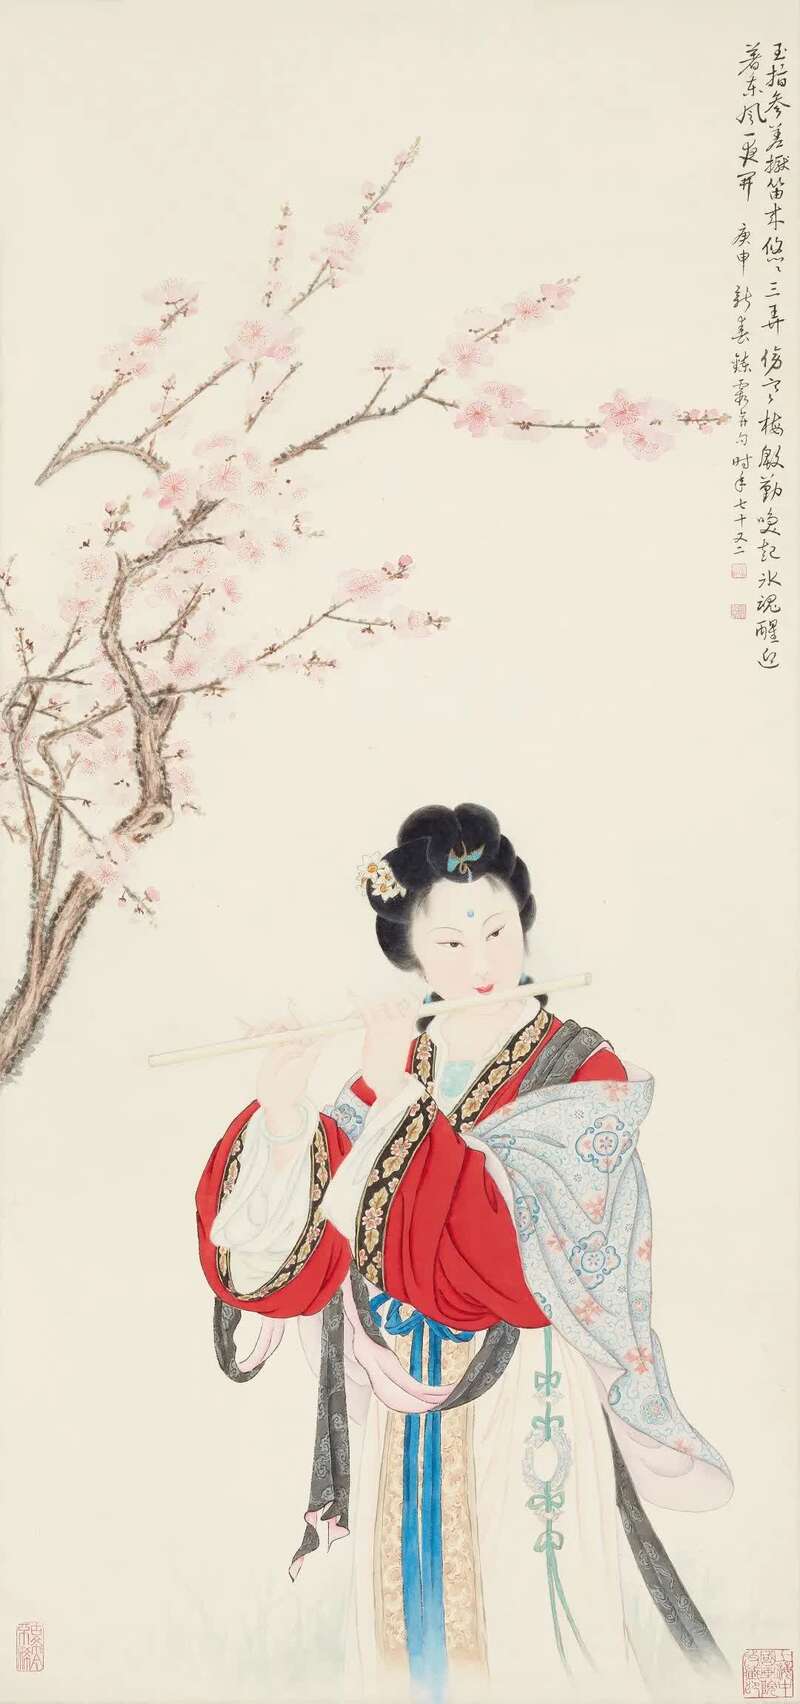 其余神态各异的仕女人物画中,有不少眉眼间有几分近似她本人,如上海